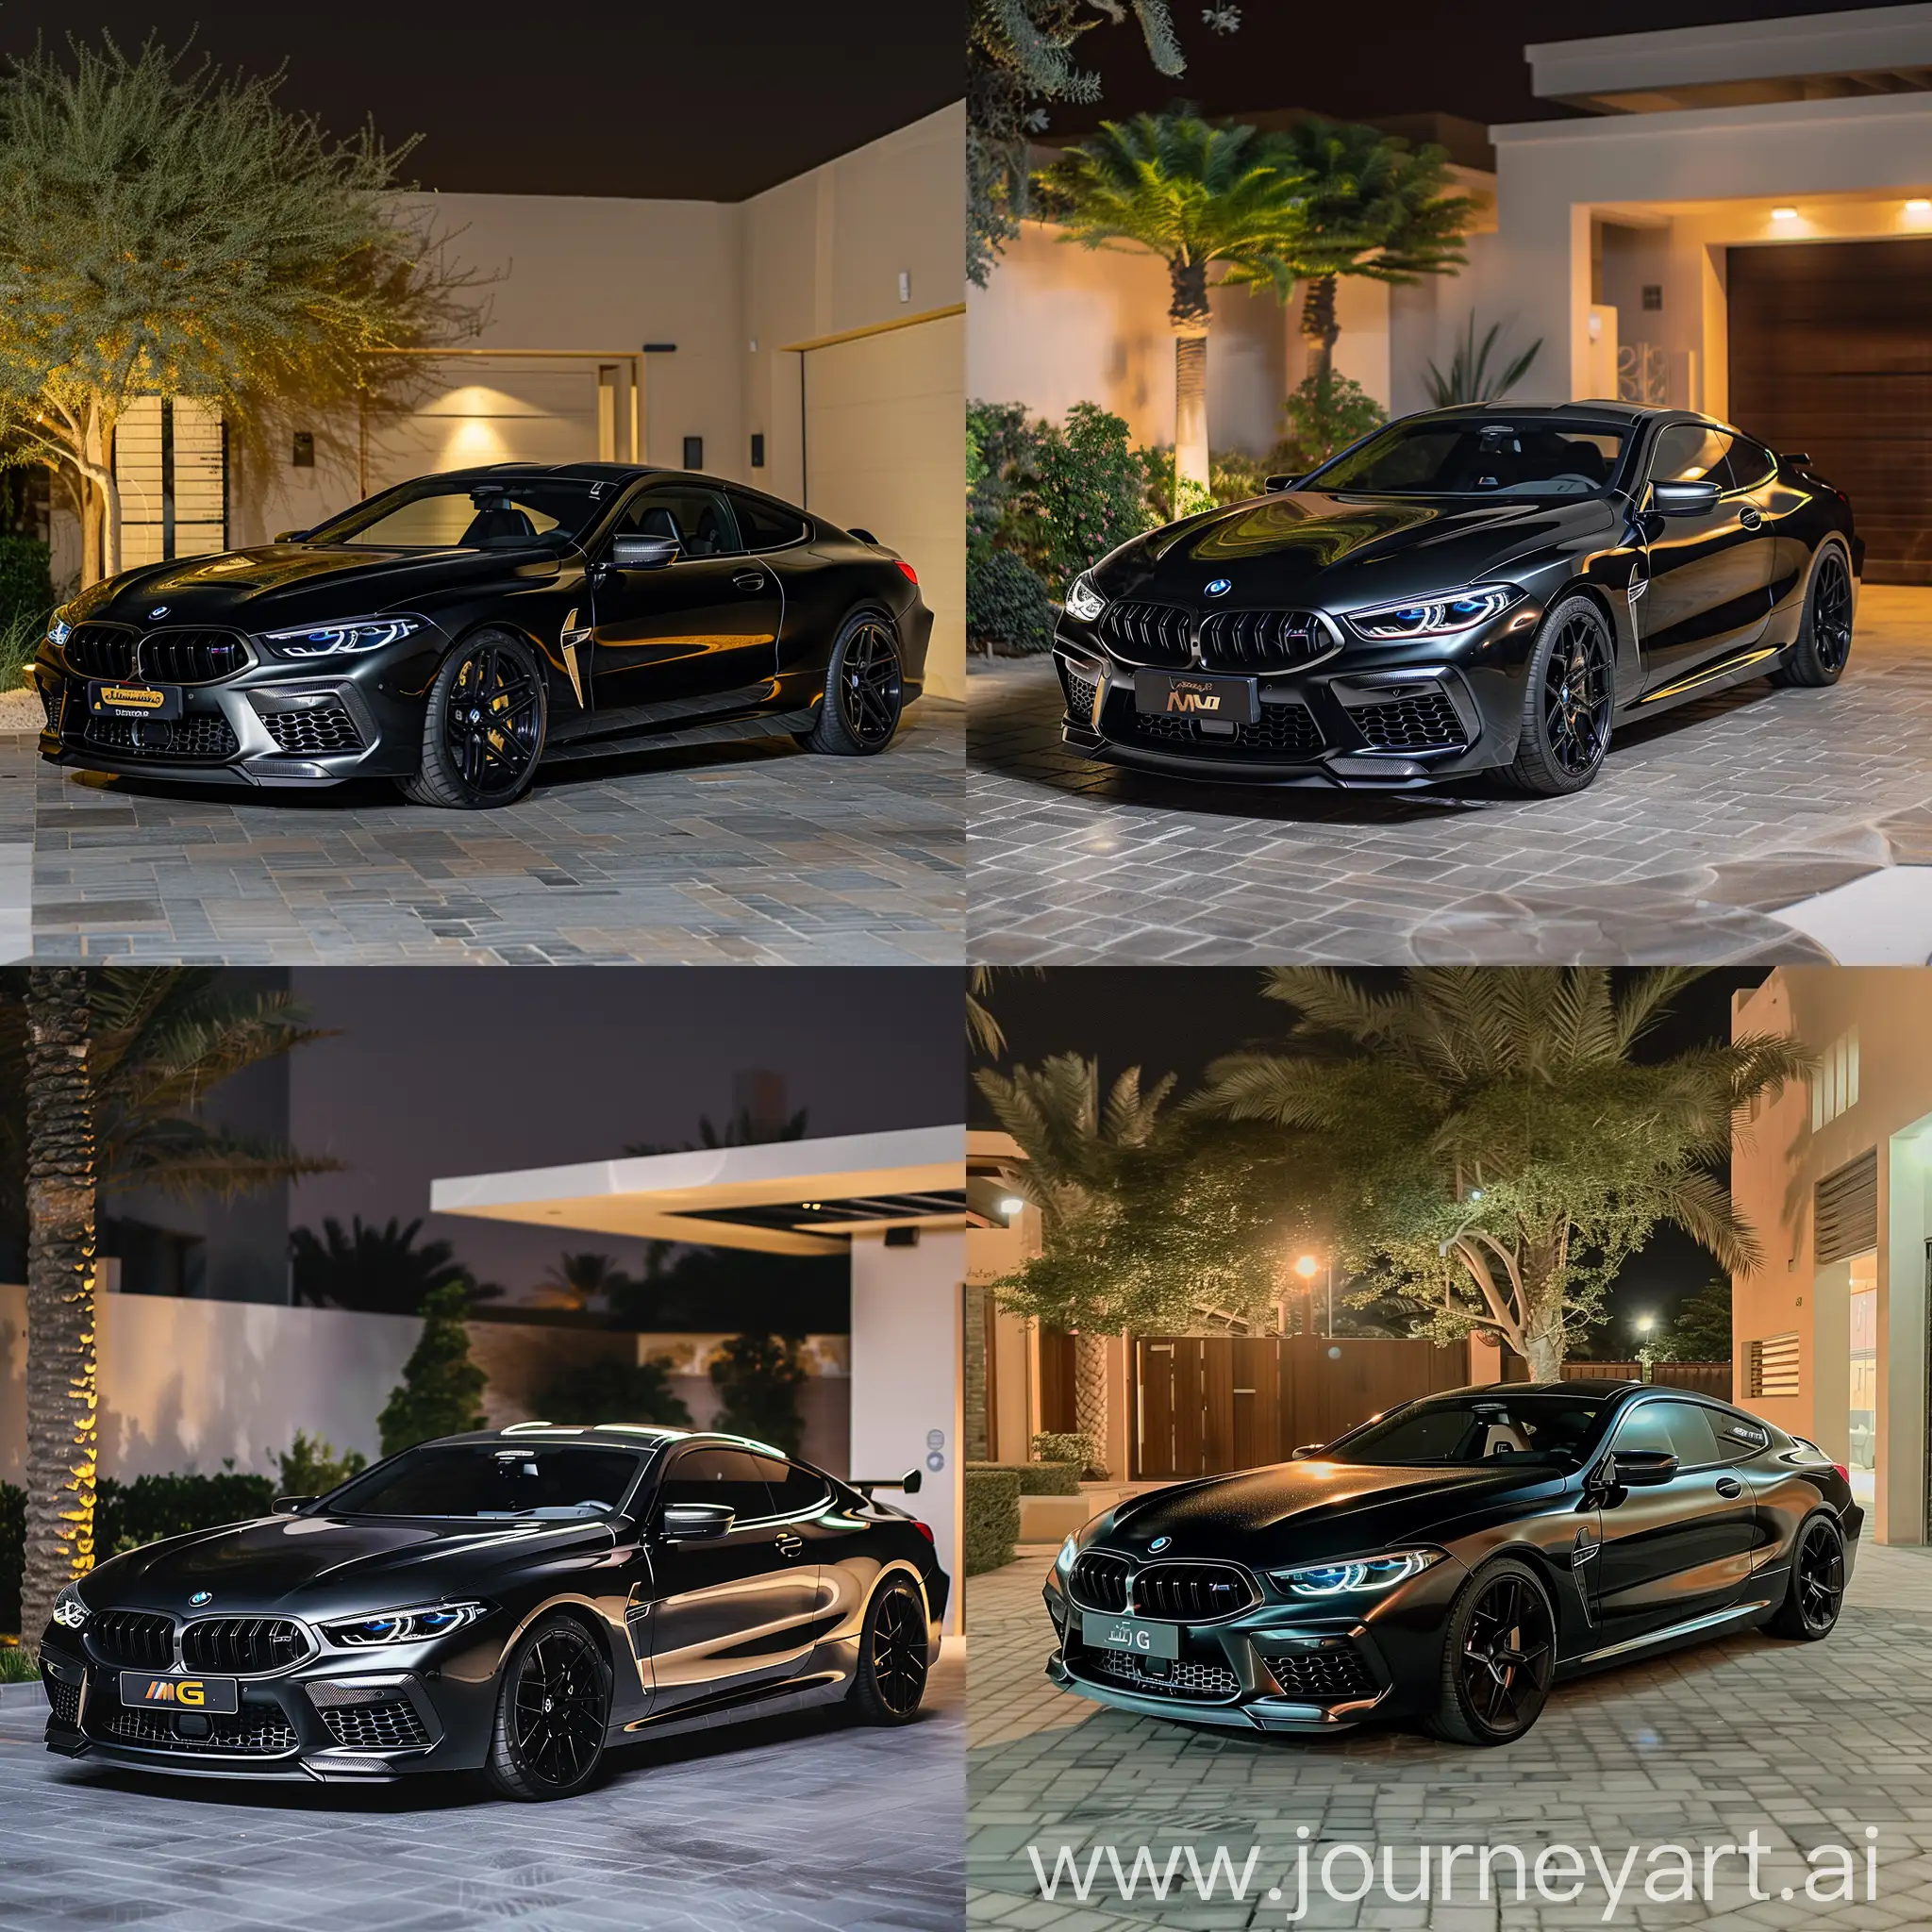 Luxurious-Black-BMW-M8-G-Power-Kit-Parked-in-Dubai-Garage-at-Night